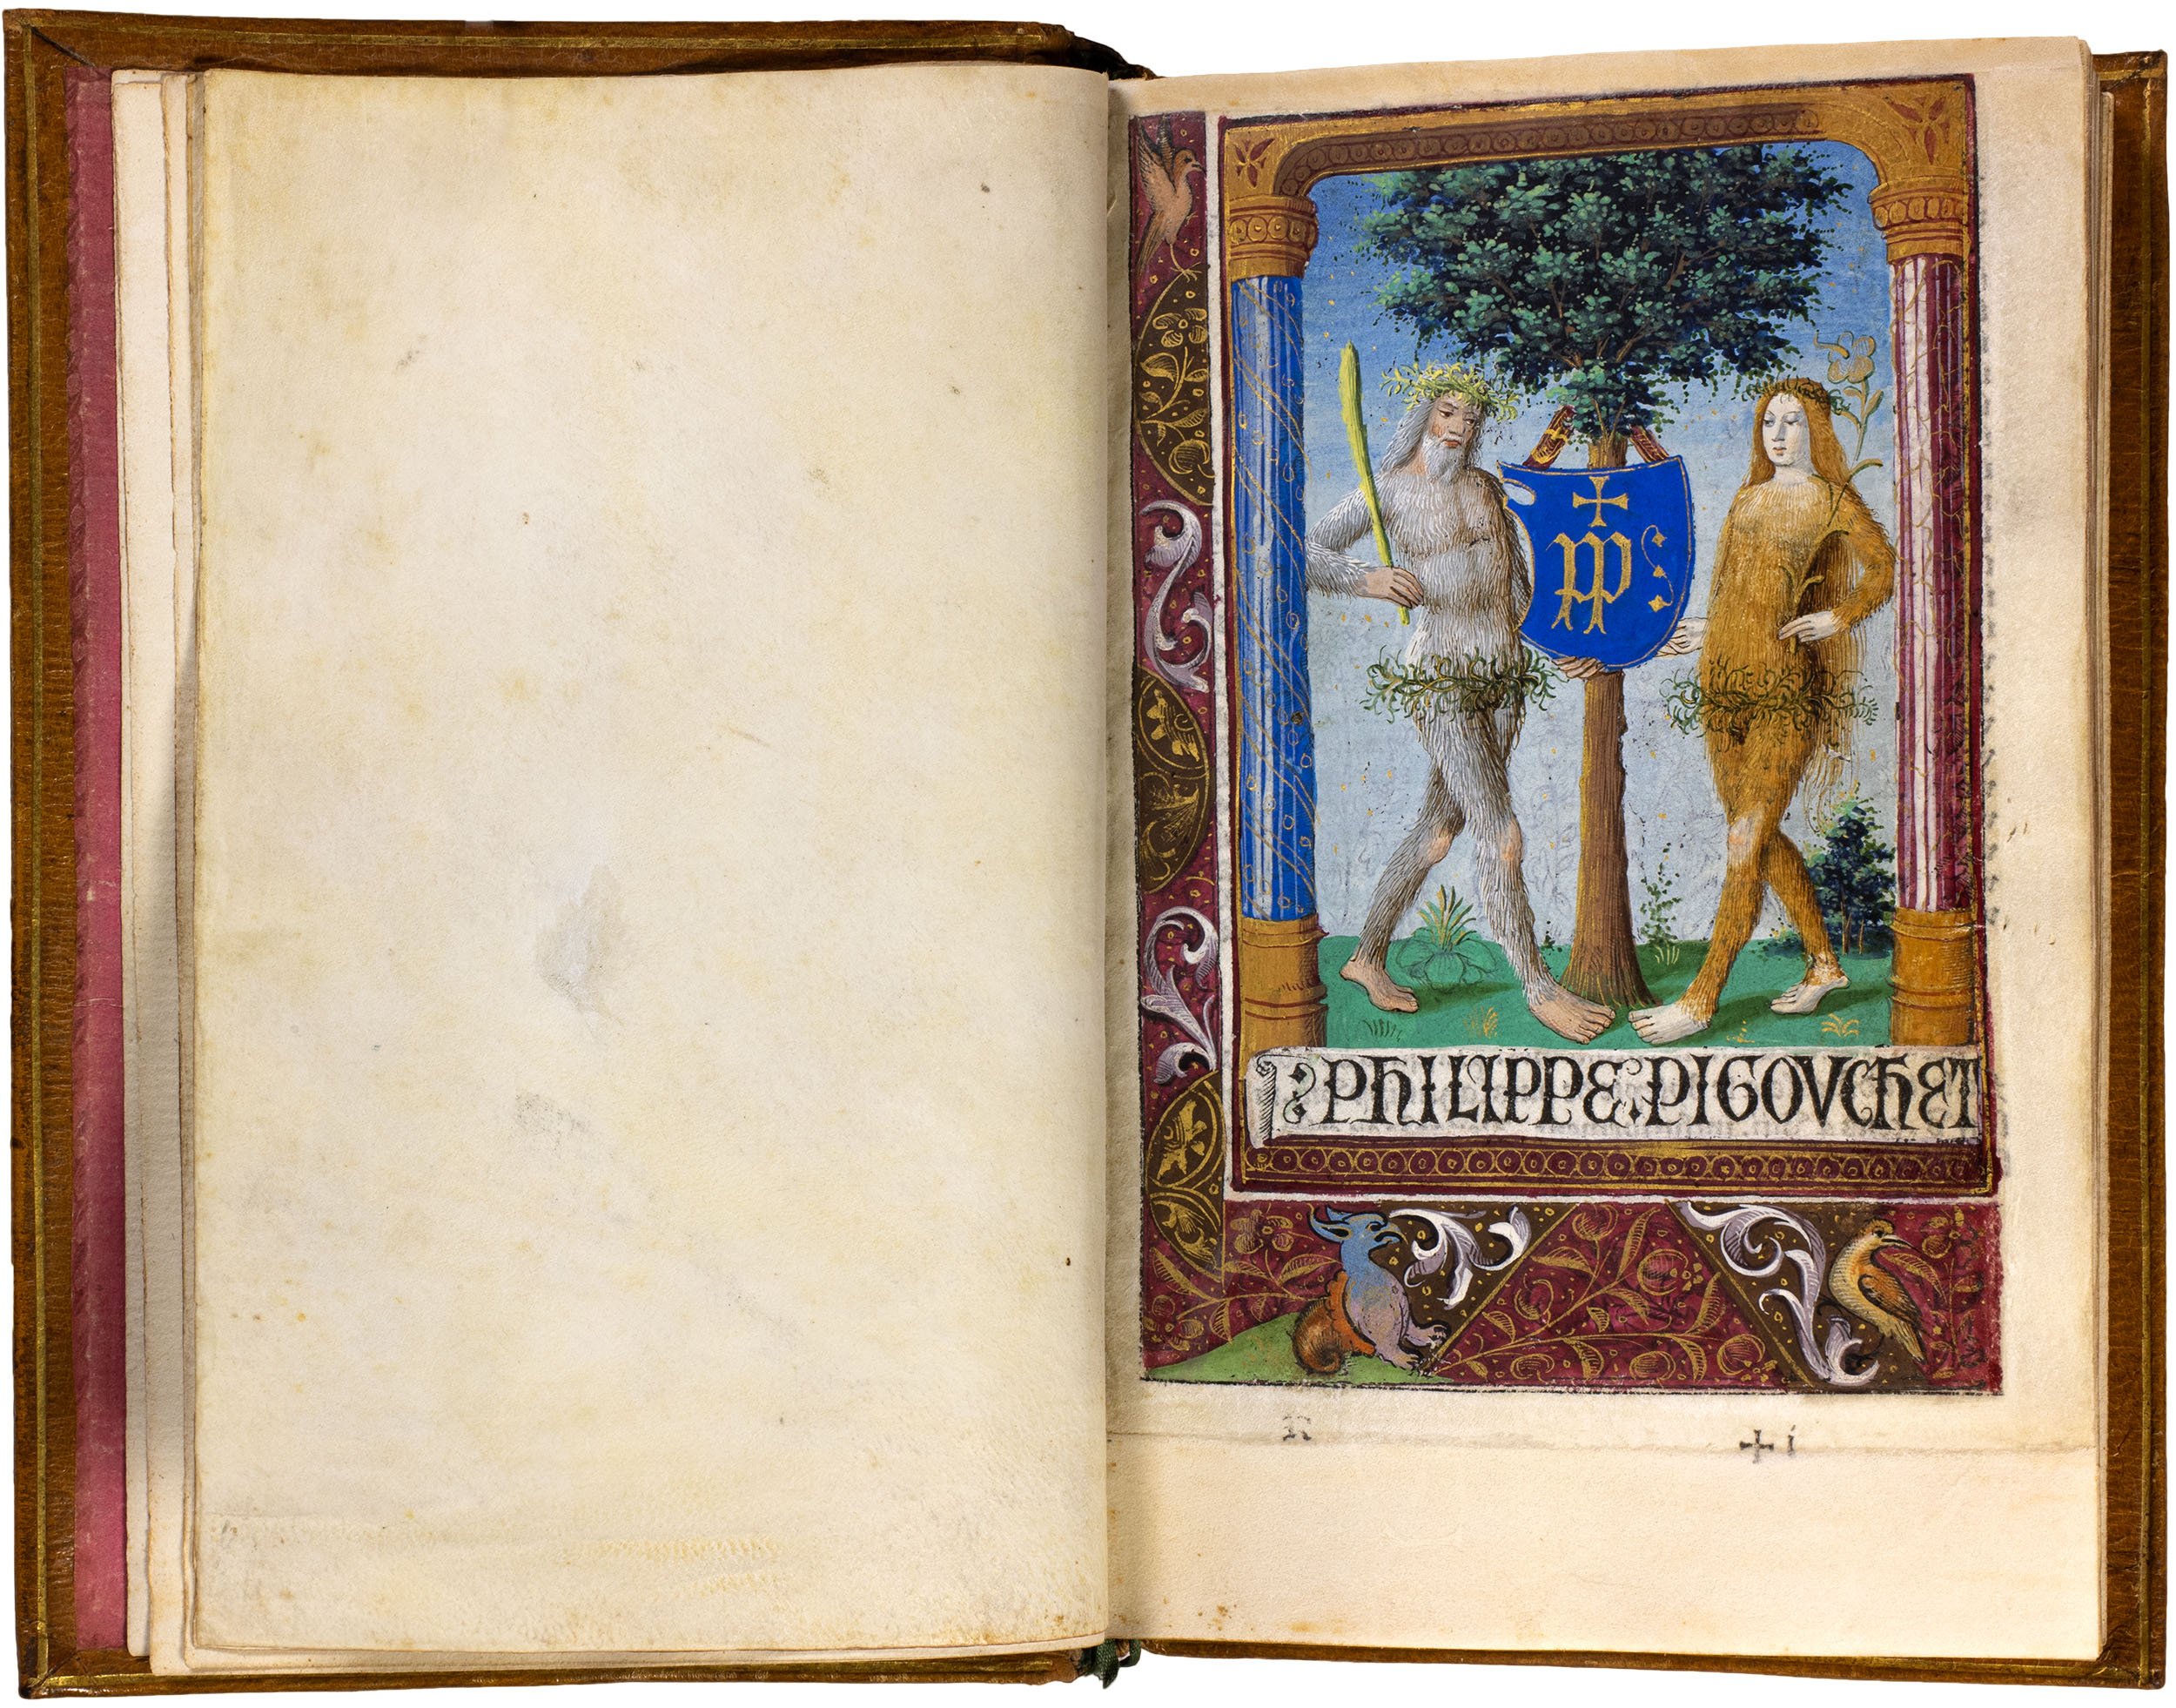 Horae-bmv-pigouchet-19-april-1494-pigouchet-robert-gaguin-illuminated-vellum-copy-5.jpg